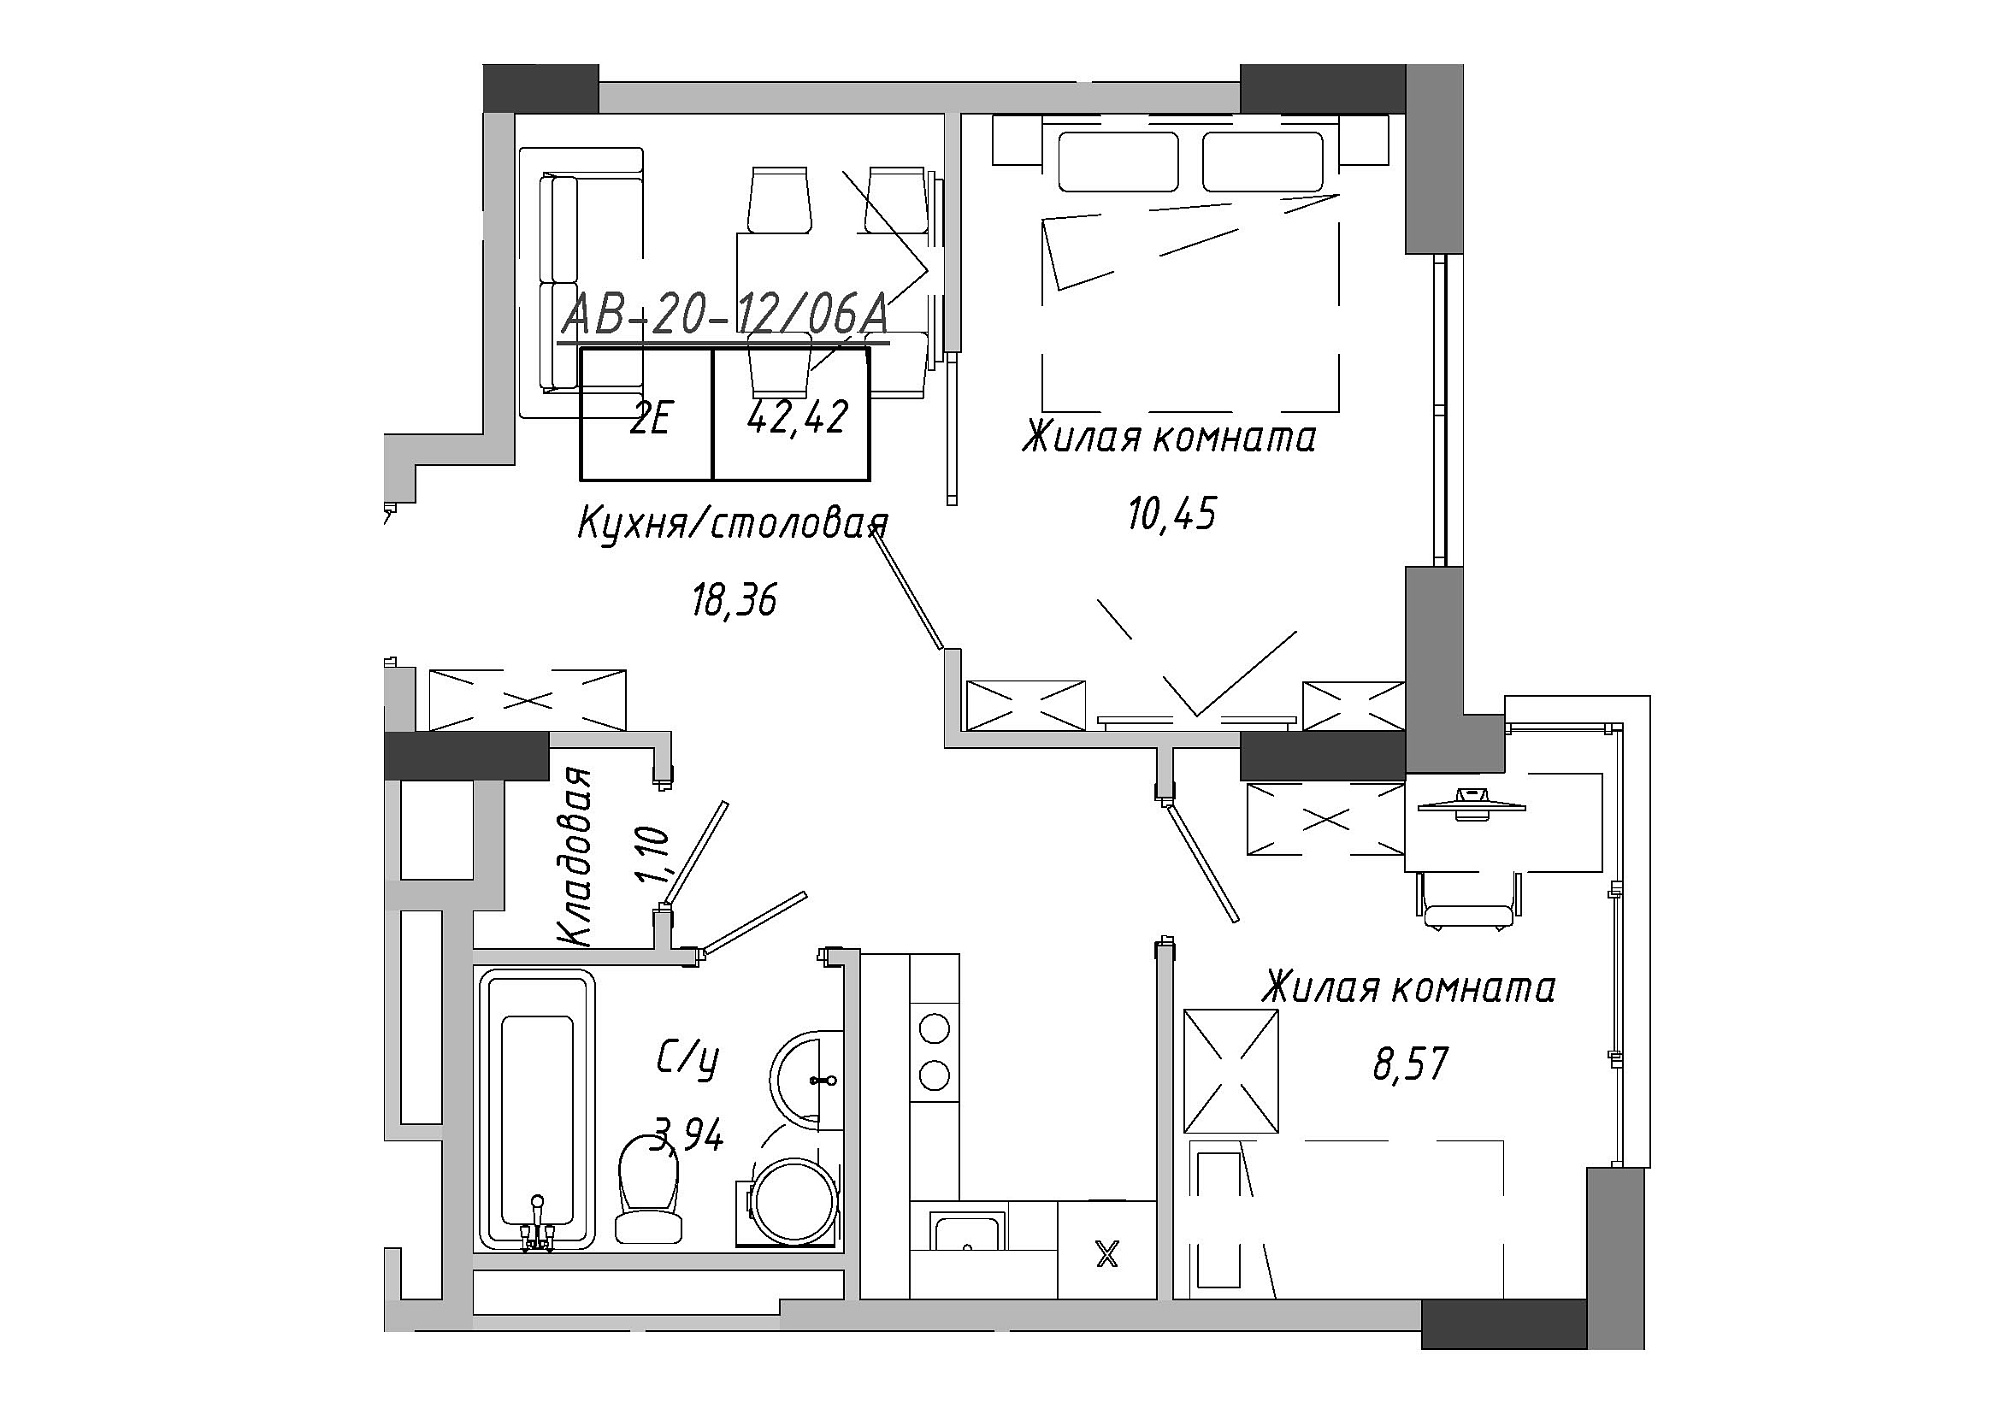 Планування 2-к квартира площею 42.85м2, AB-20-12/0006а.